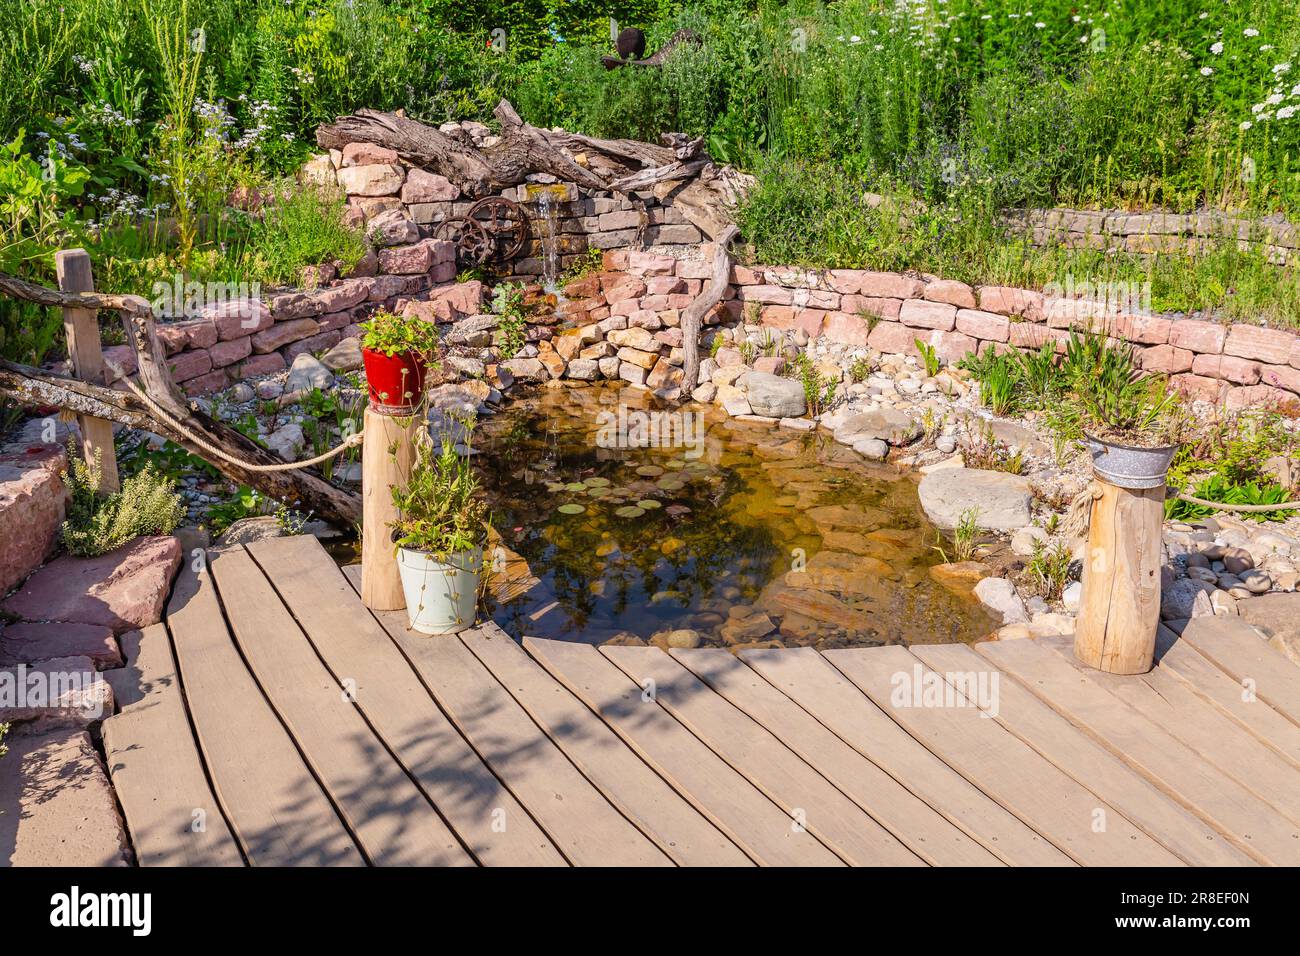 Estanque - Jardinería Plaza estanque de agua con piedra natural